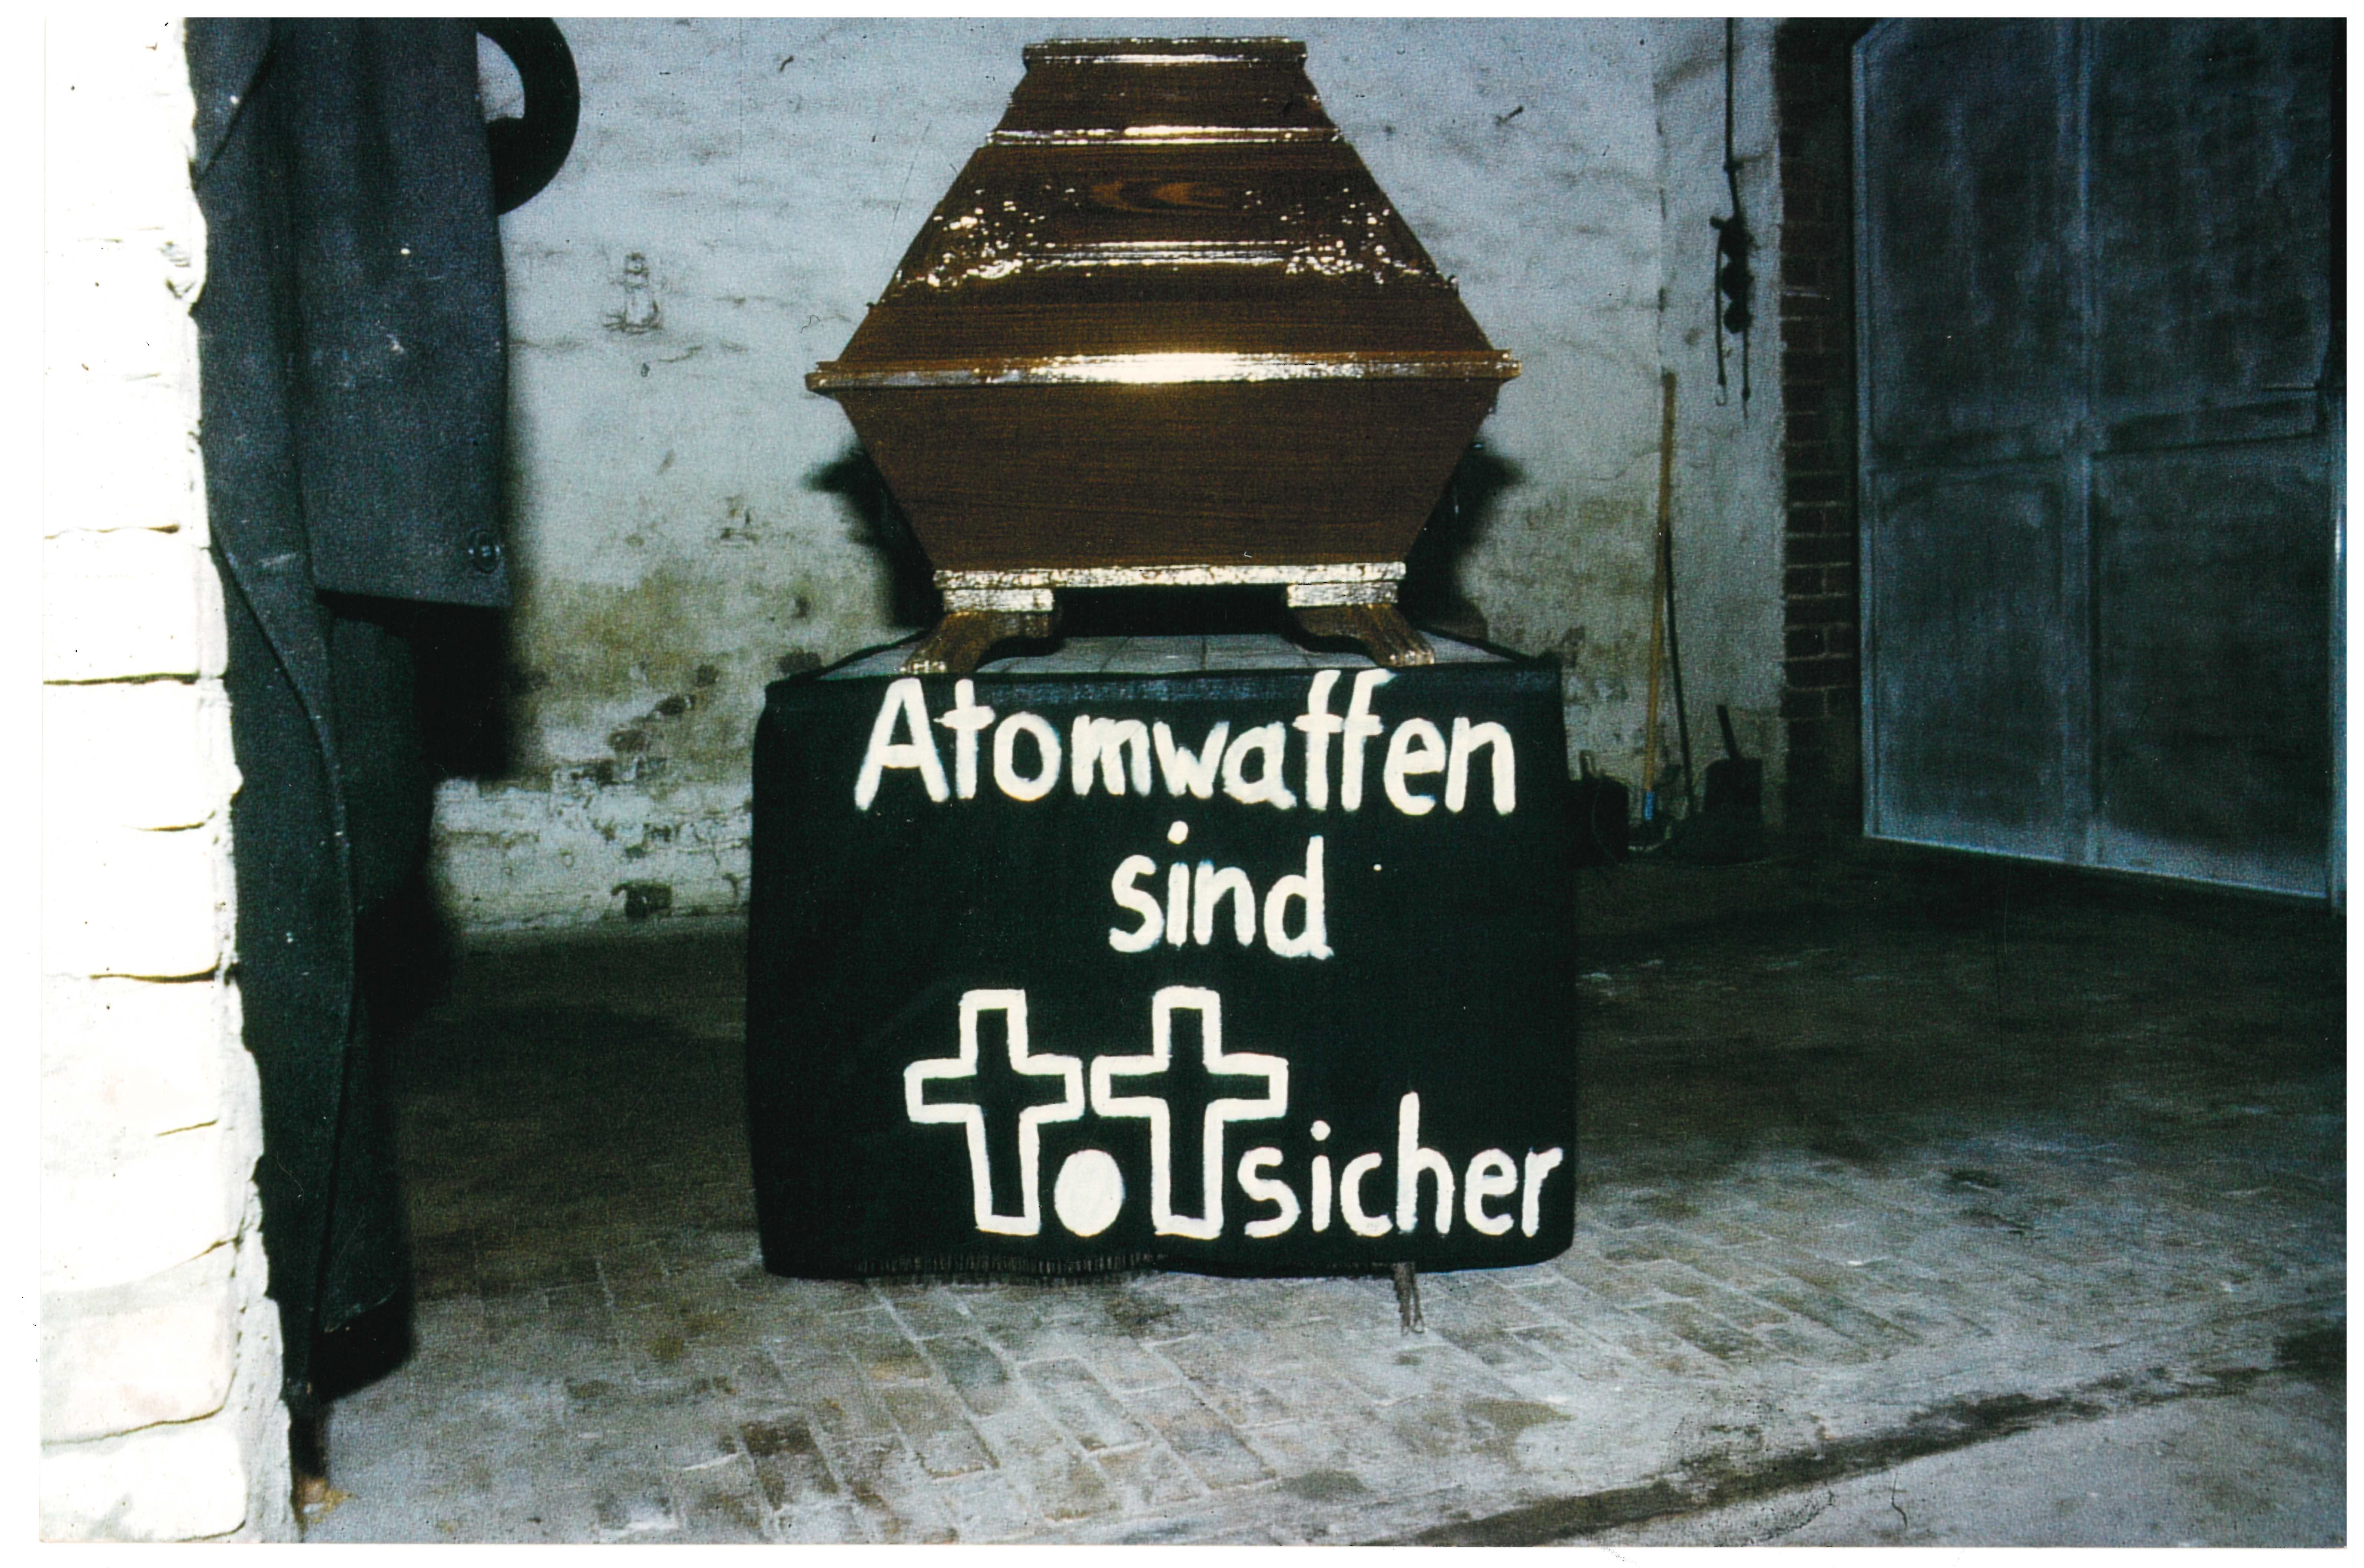 Sarg mit Transparent: "Atomwaffen sind totsicher" für den Protest gegen die Atomschlagübung "Dosse 83" (DDR Geschichtsmuseum im Dokumentationszentrum Perleberg CC BY-SA)